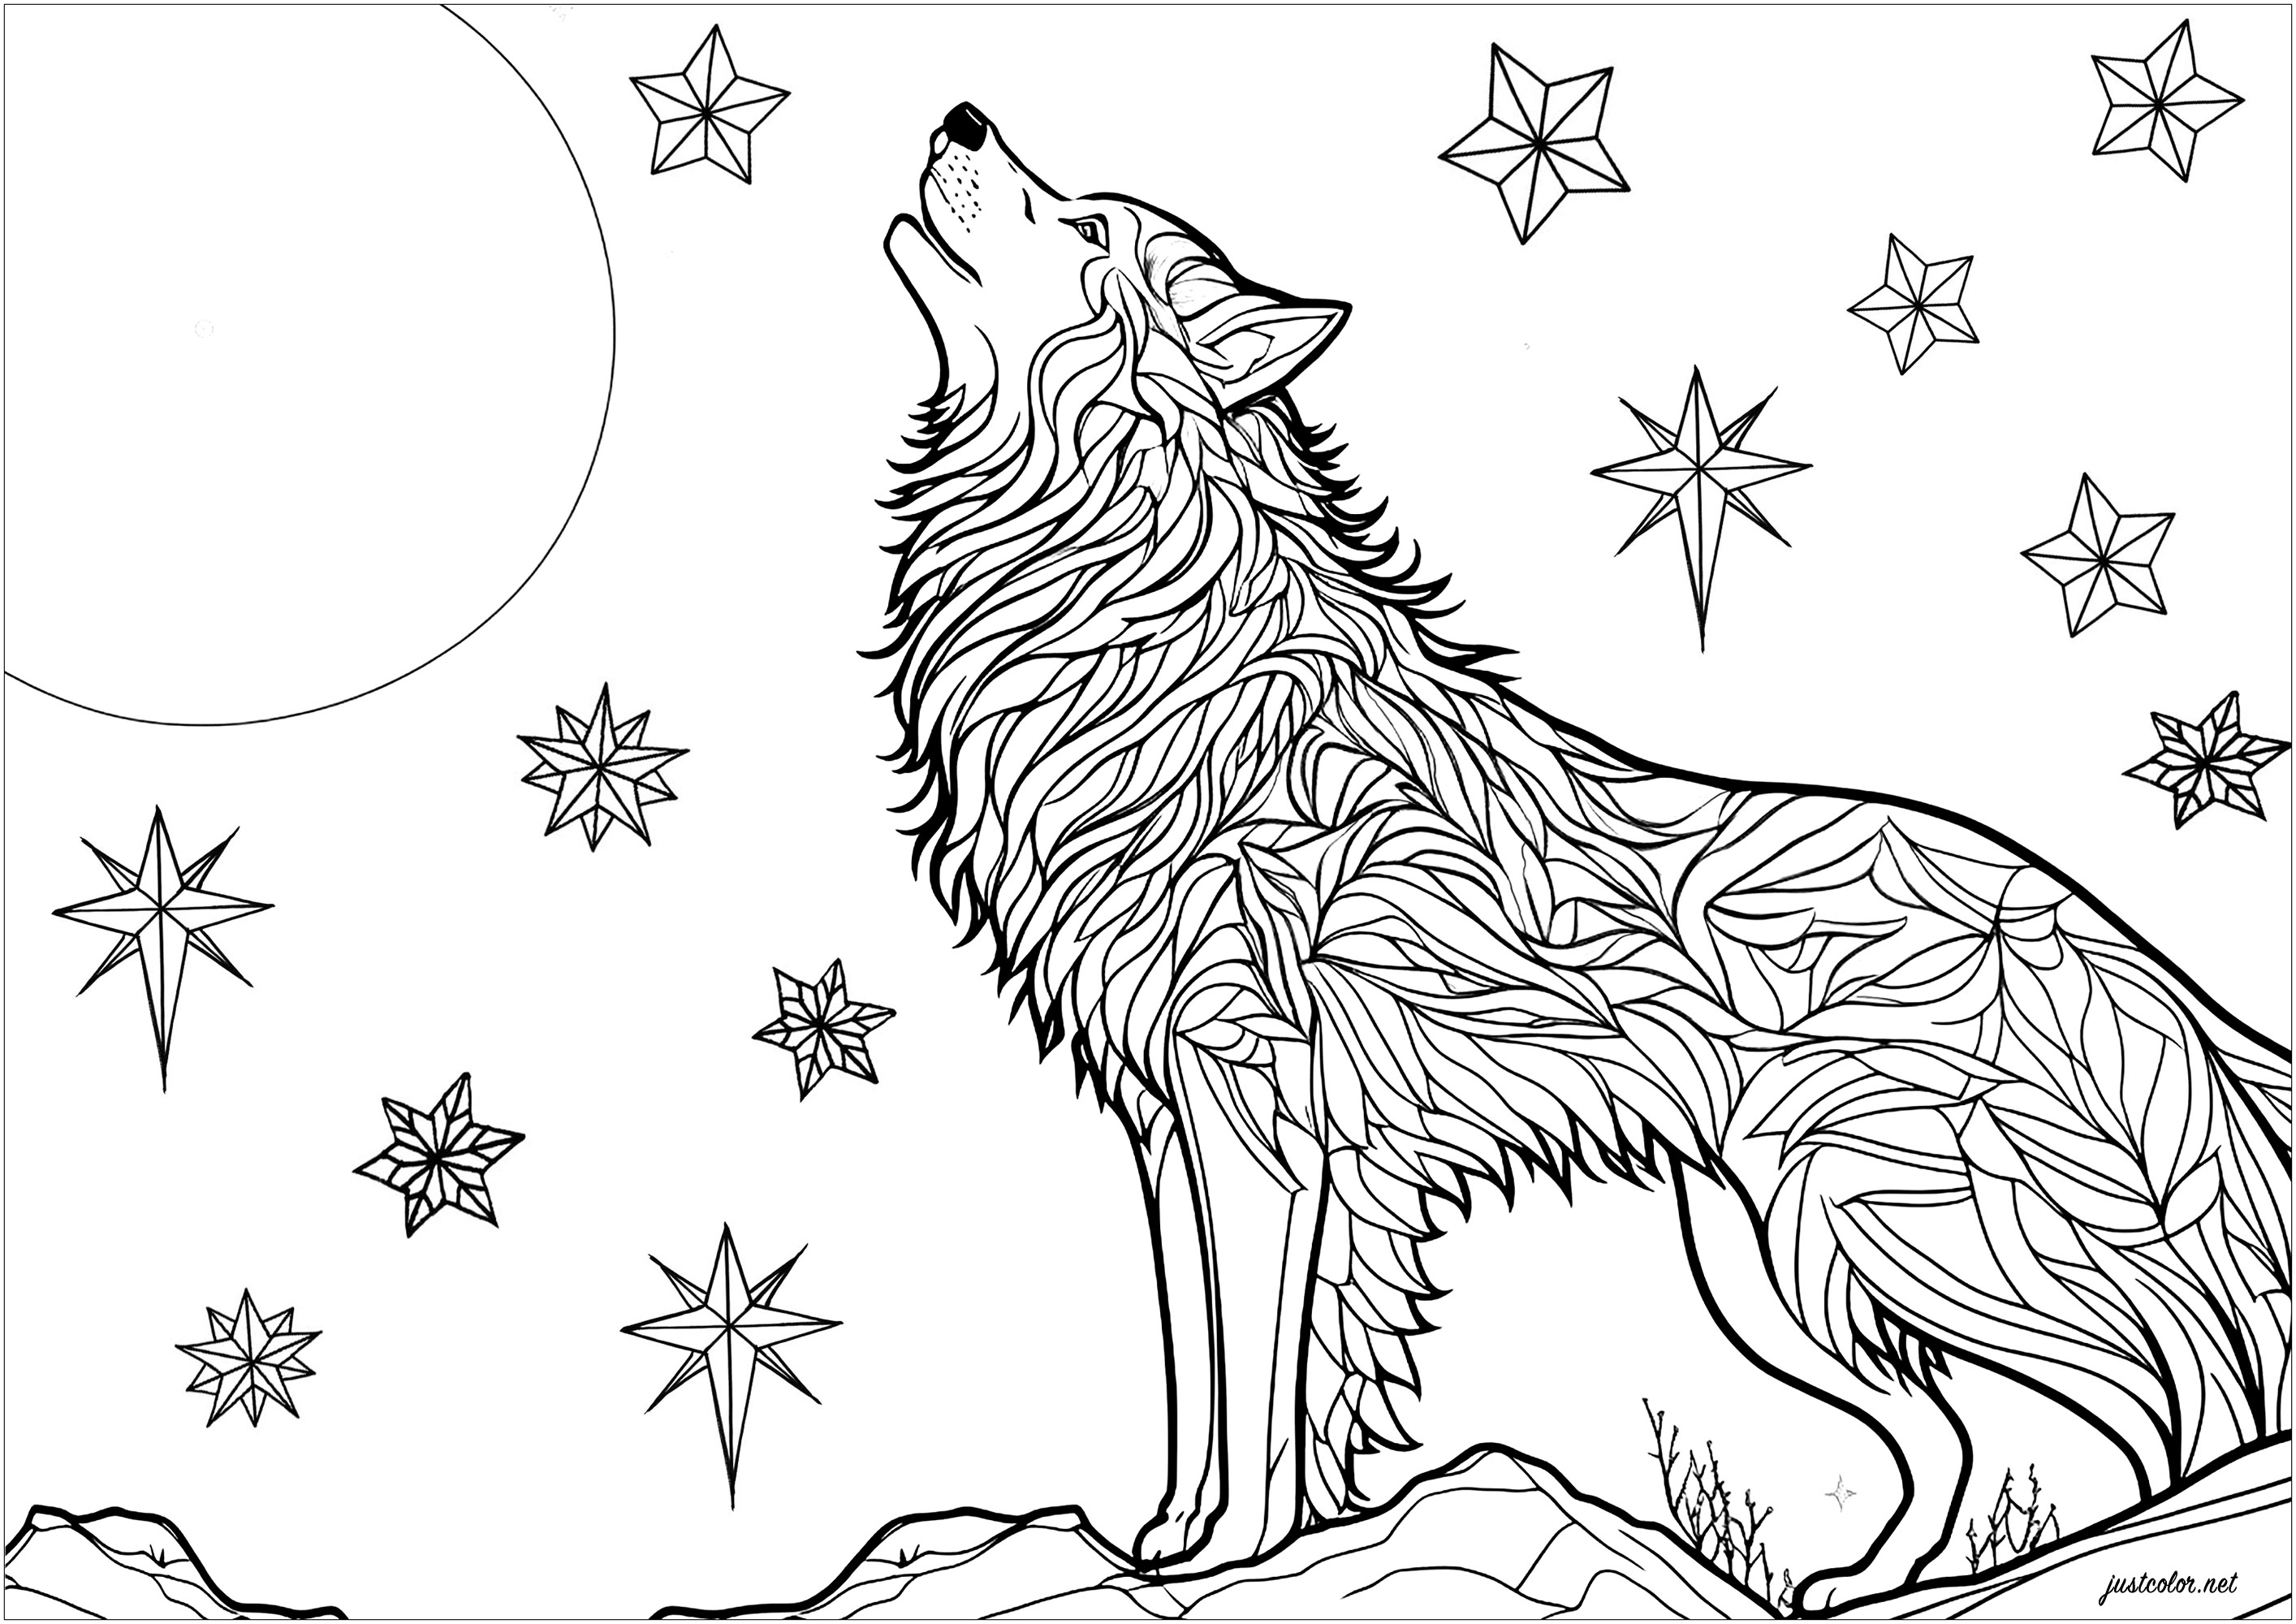 Coloriage d'un loup hurlant au clair de lune. Magnifique scène avec un loup hurlant pendant la nuit, posé sur un rocher. On peut voir des étoiles scintillantes dans le ciel nocturne. Les motifs de la fourrure du loup peuvent être colorés indépendamment, pour un résultat plein de mystère et de magie.